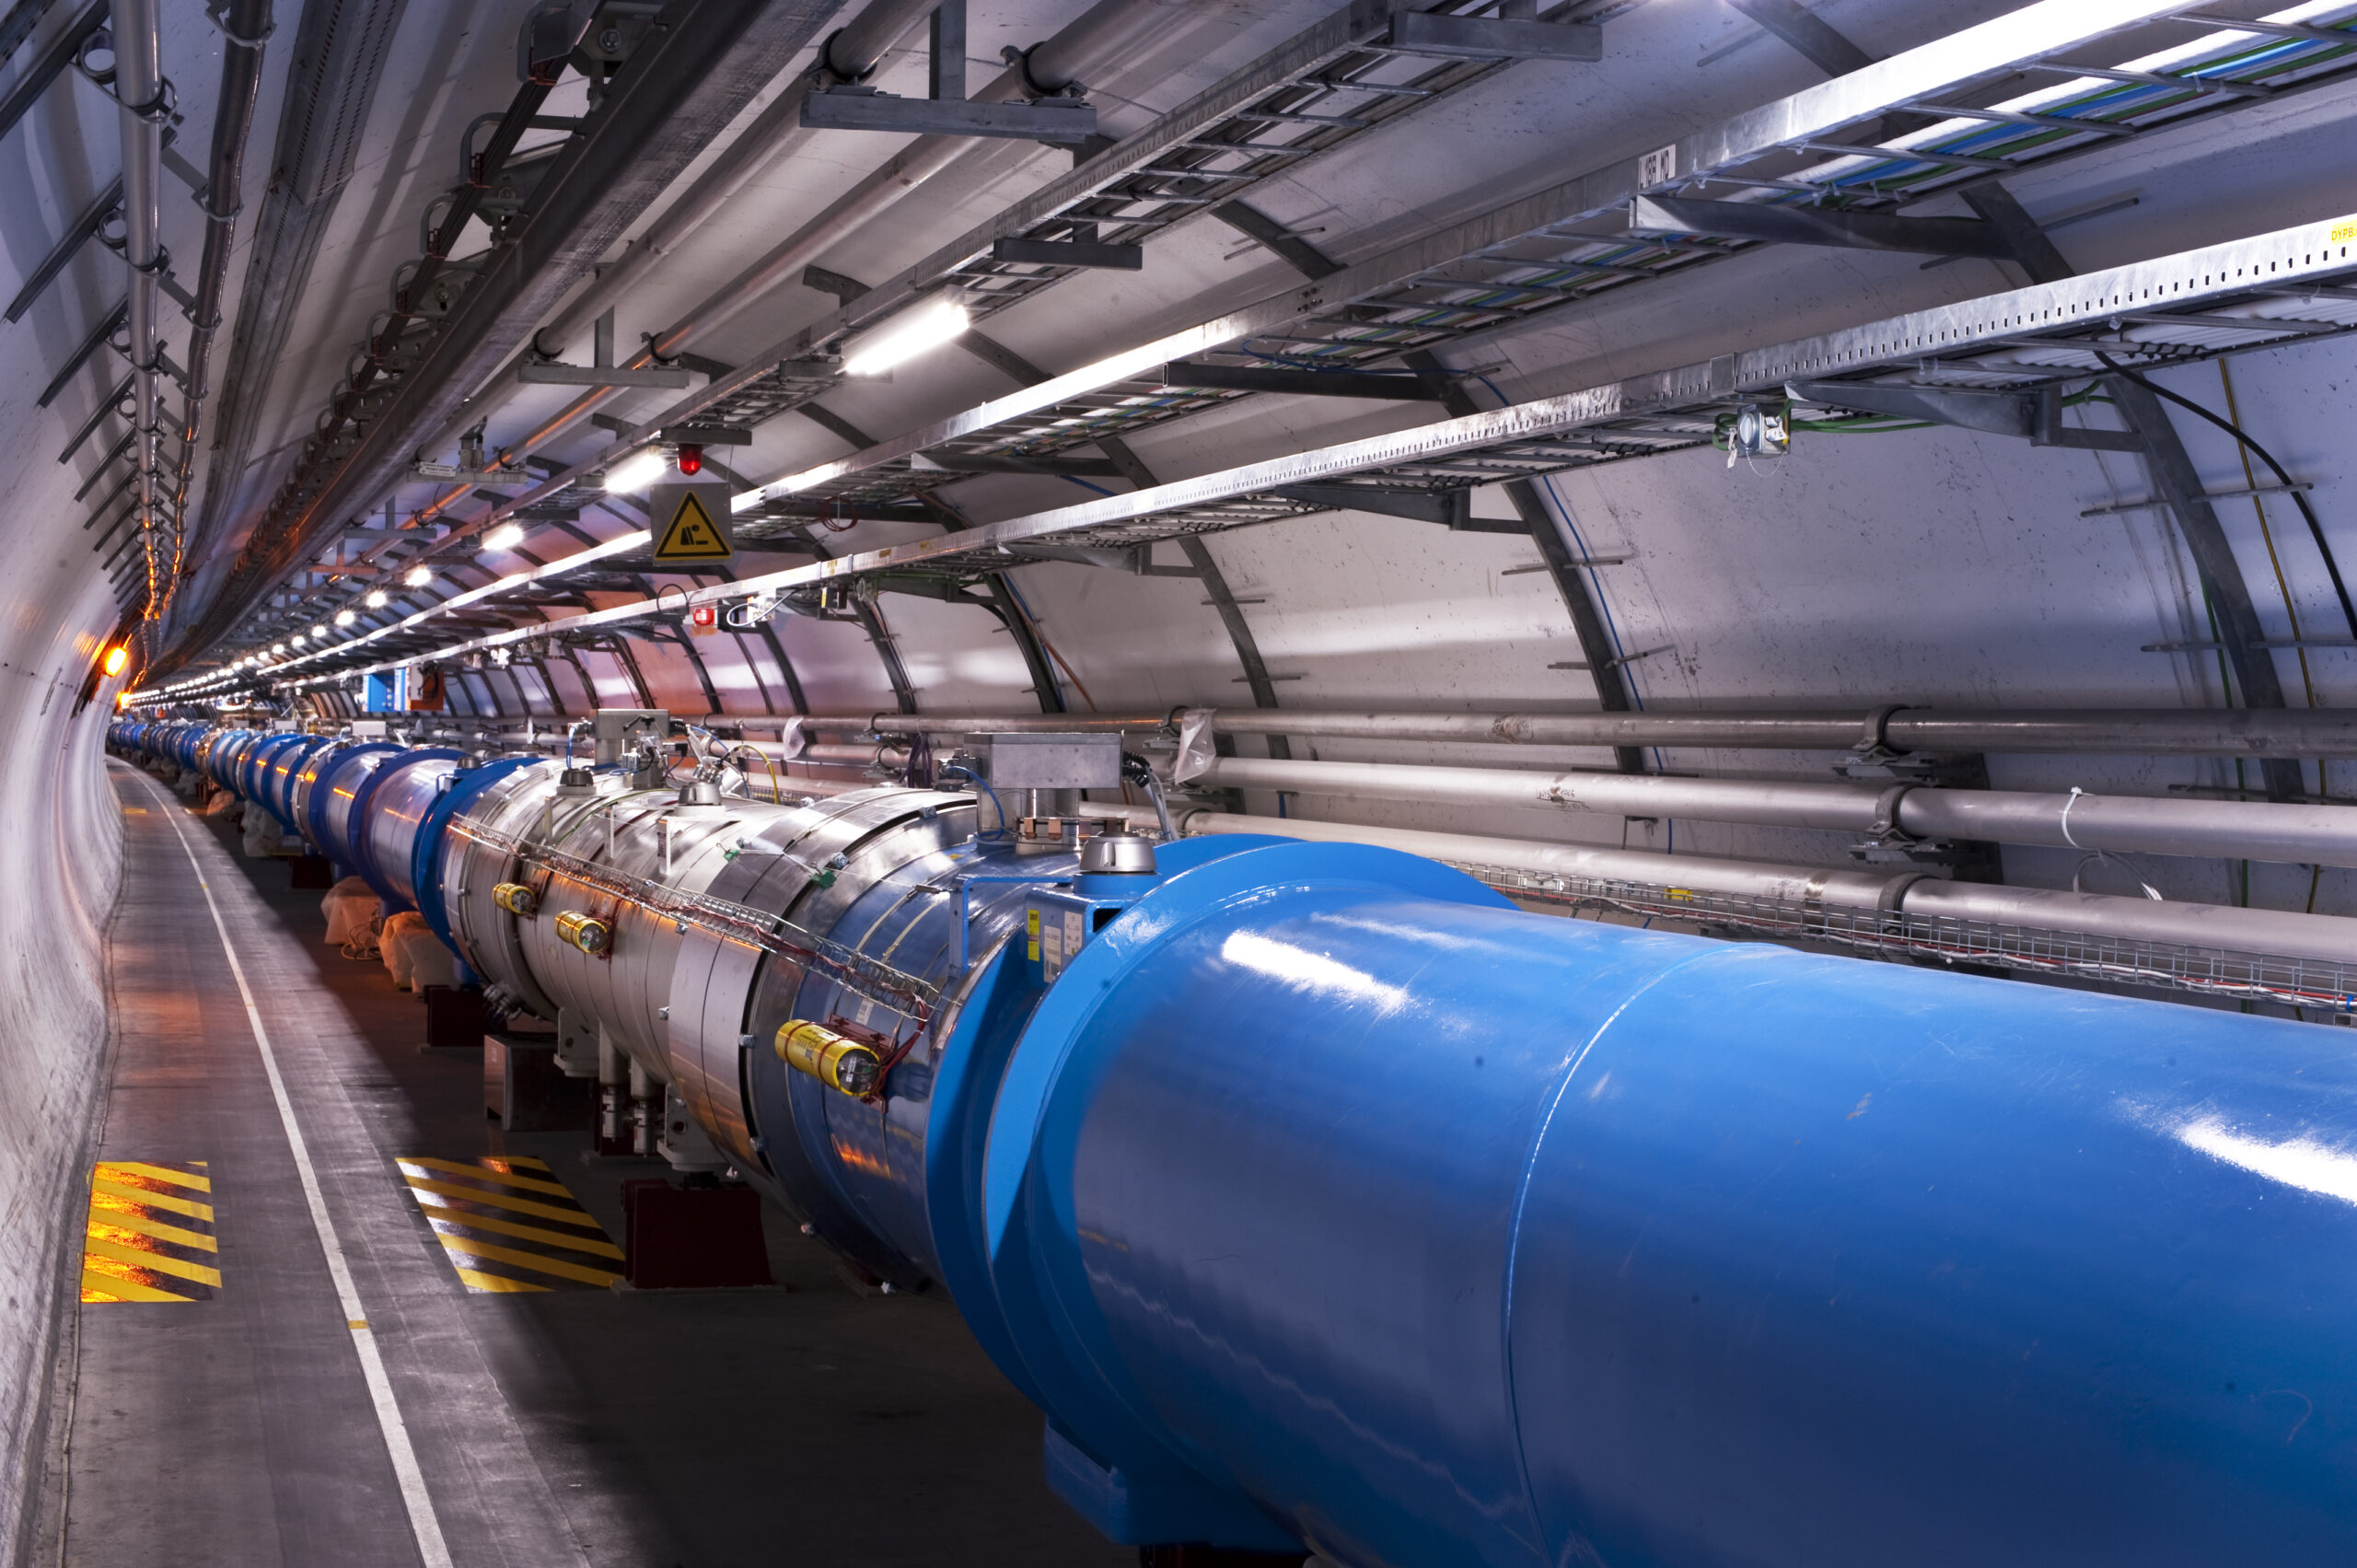 Regresa con fuerza el LHC: el mayor experimento sobre la Tierra